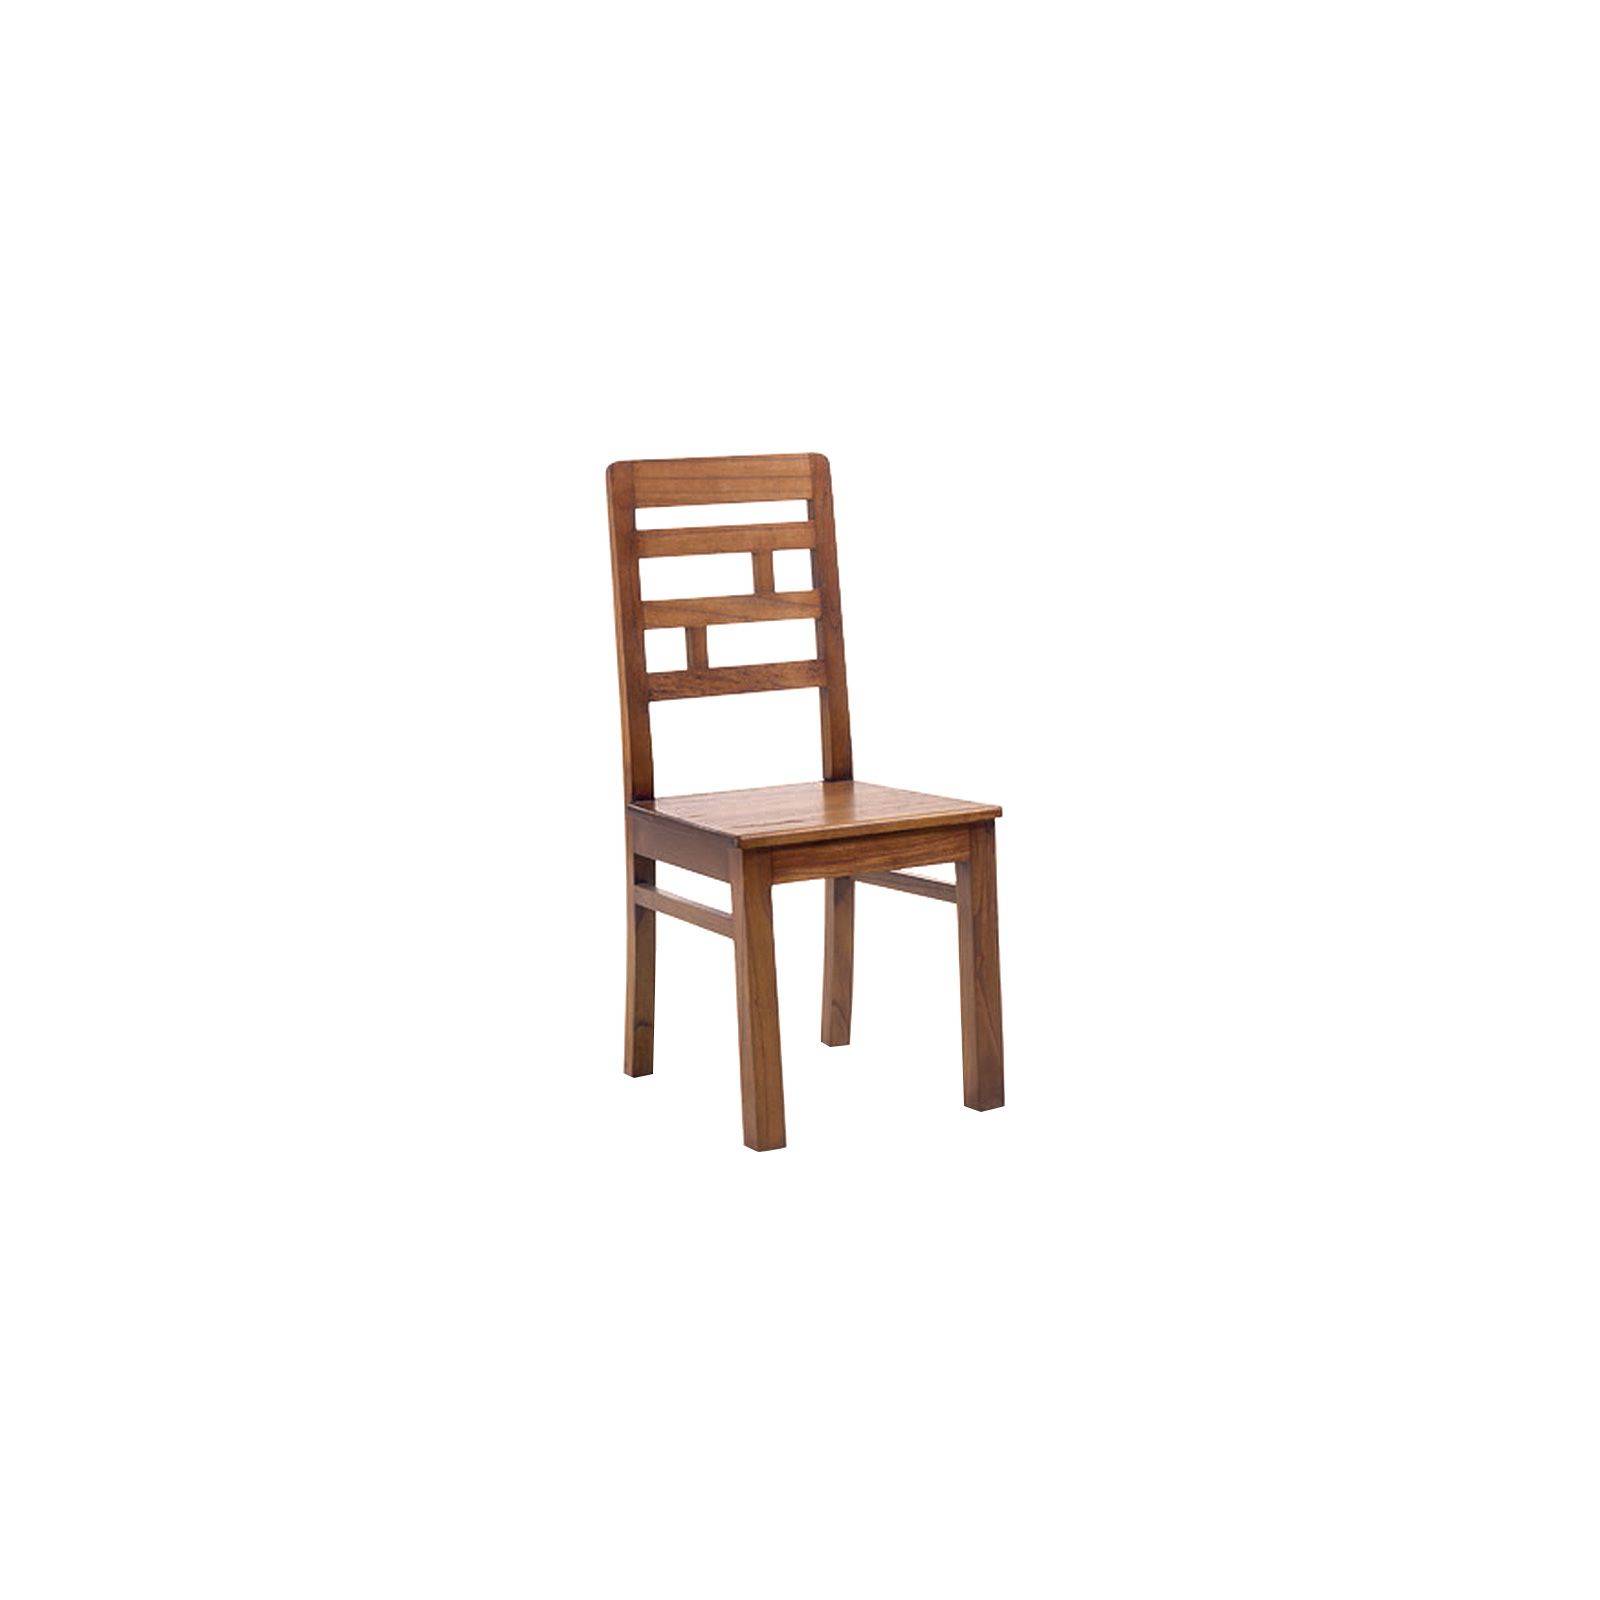 Chaise en bois massif, cuir ou tissu. Des chaises de qualité à petit prix.